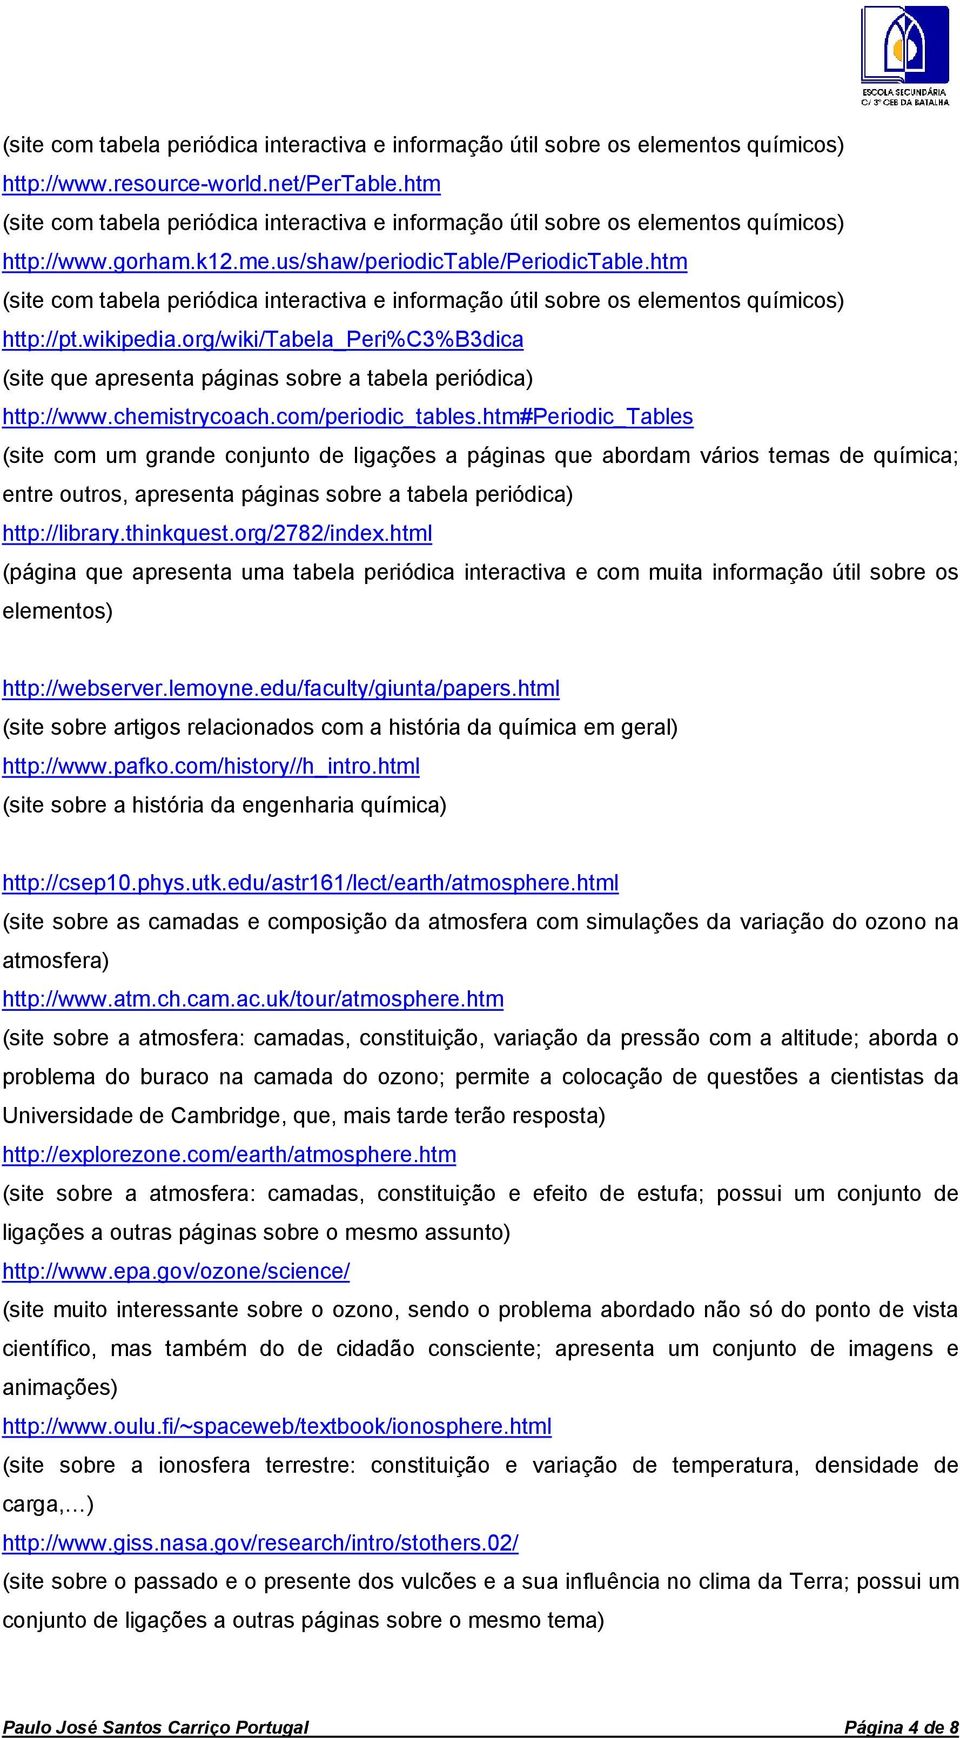 htm (site com tabela periódica interactiva e informação útil sobre os elementos químicos) http://pt.wikipedia.